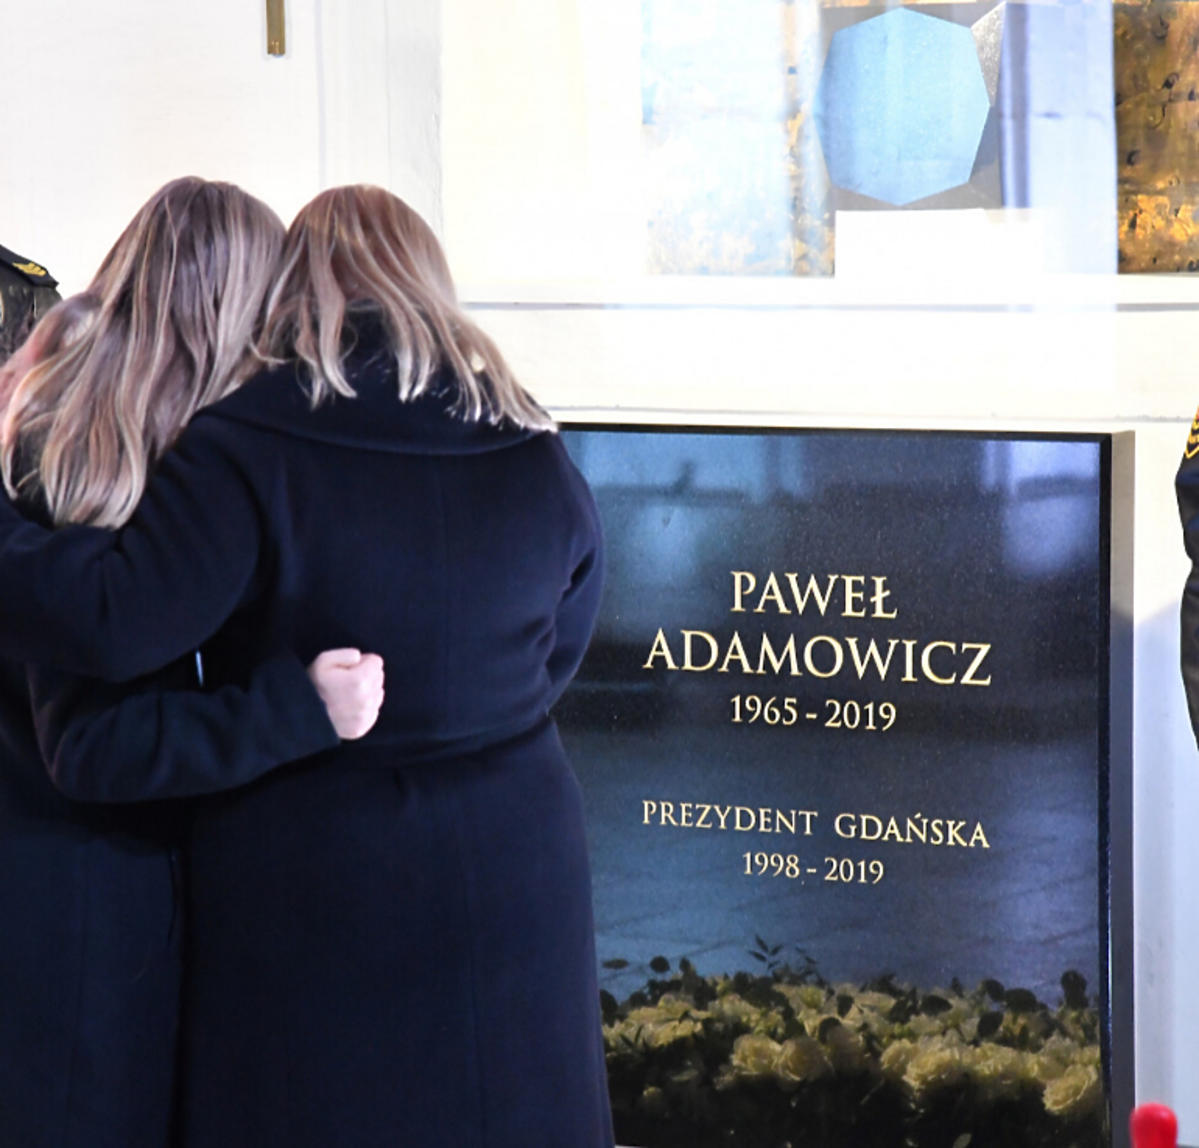 Magdalena Adamowicz z córką na uroczystości w pierwszą rocznicę śmierci Pawła Adamowicza